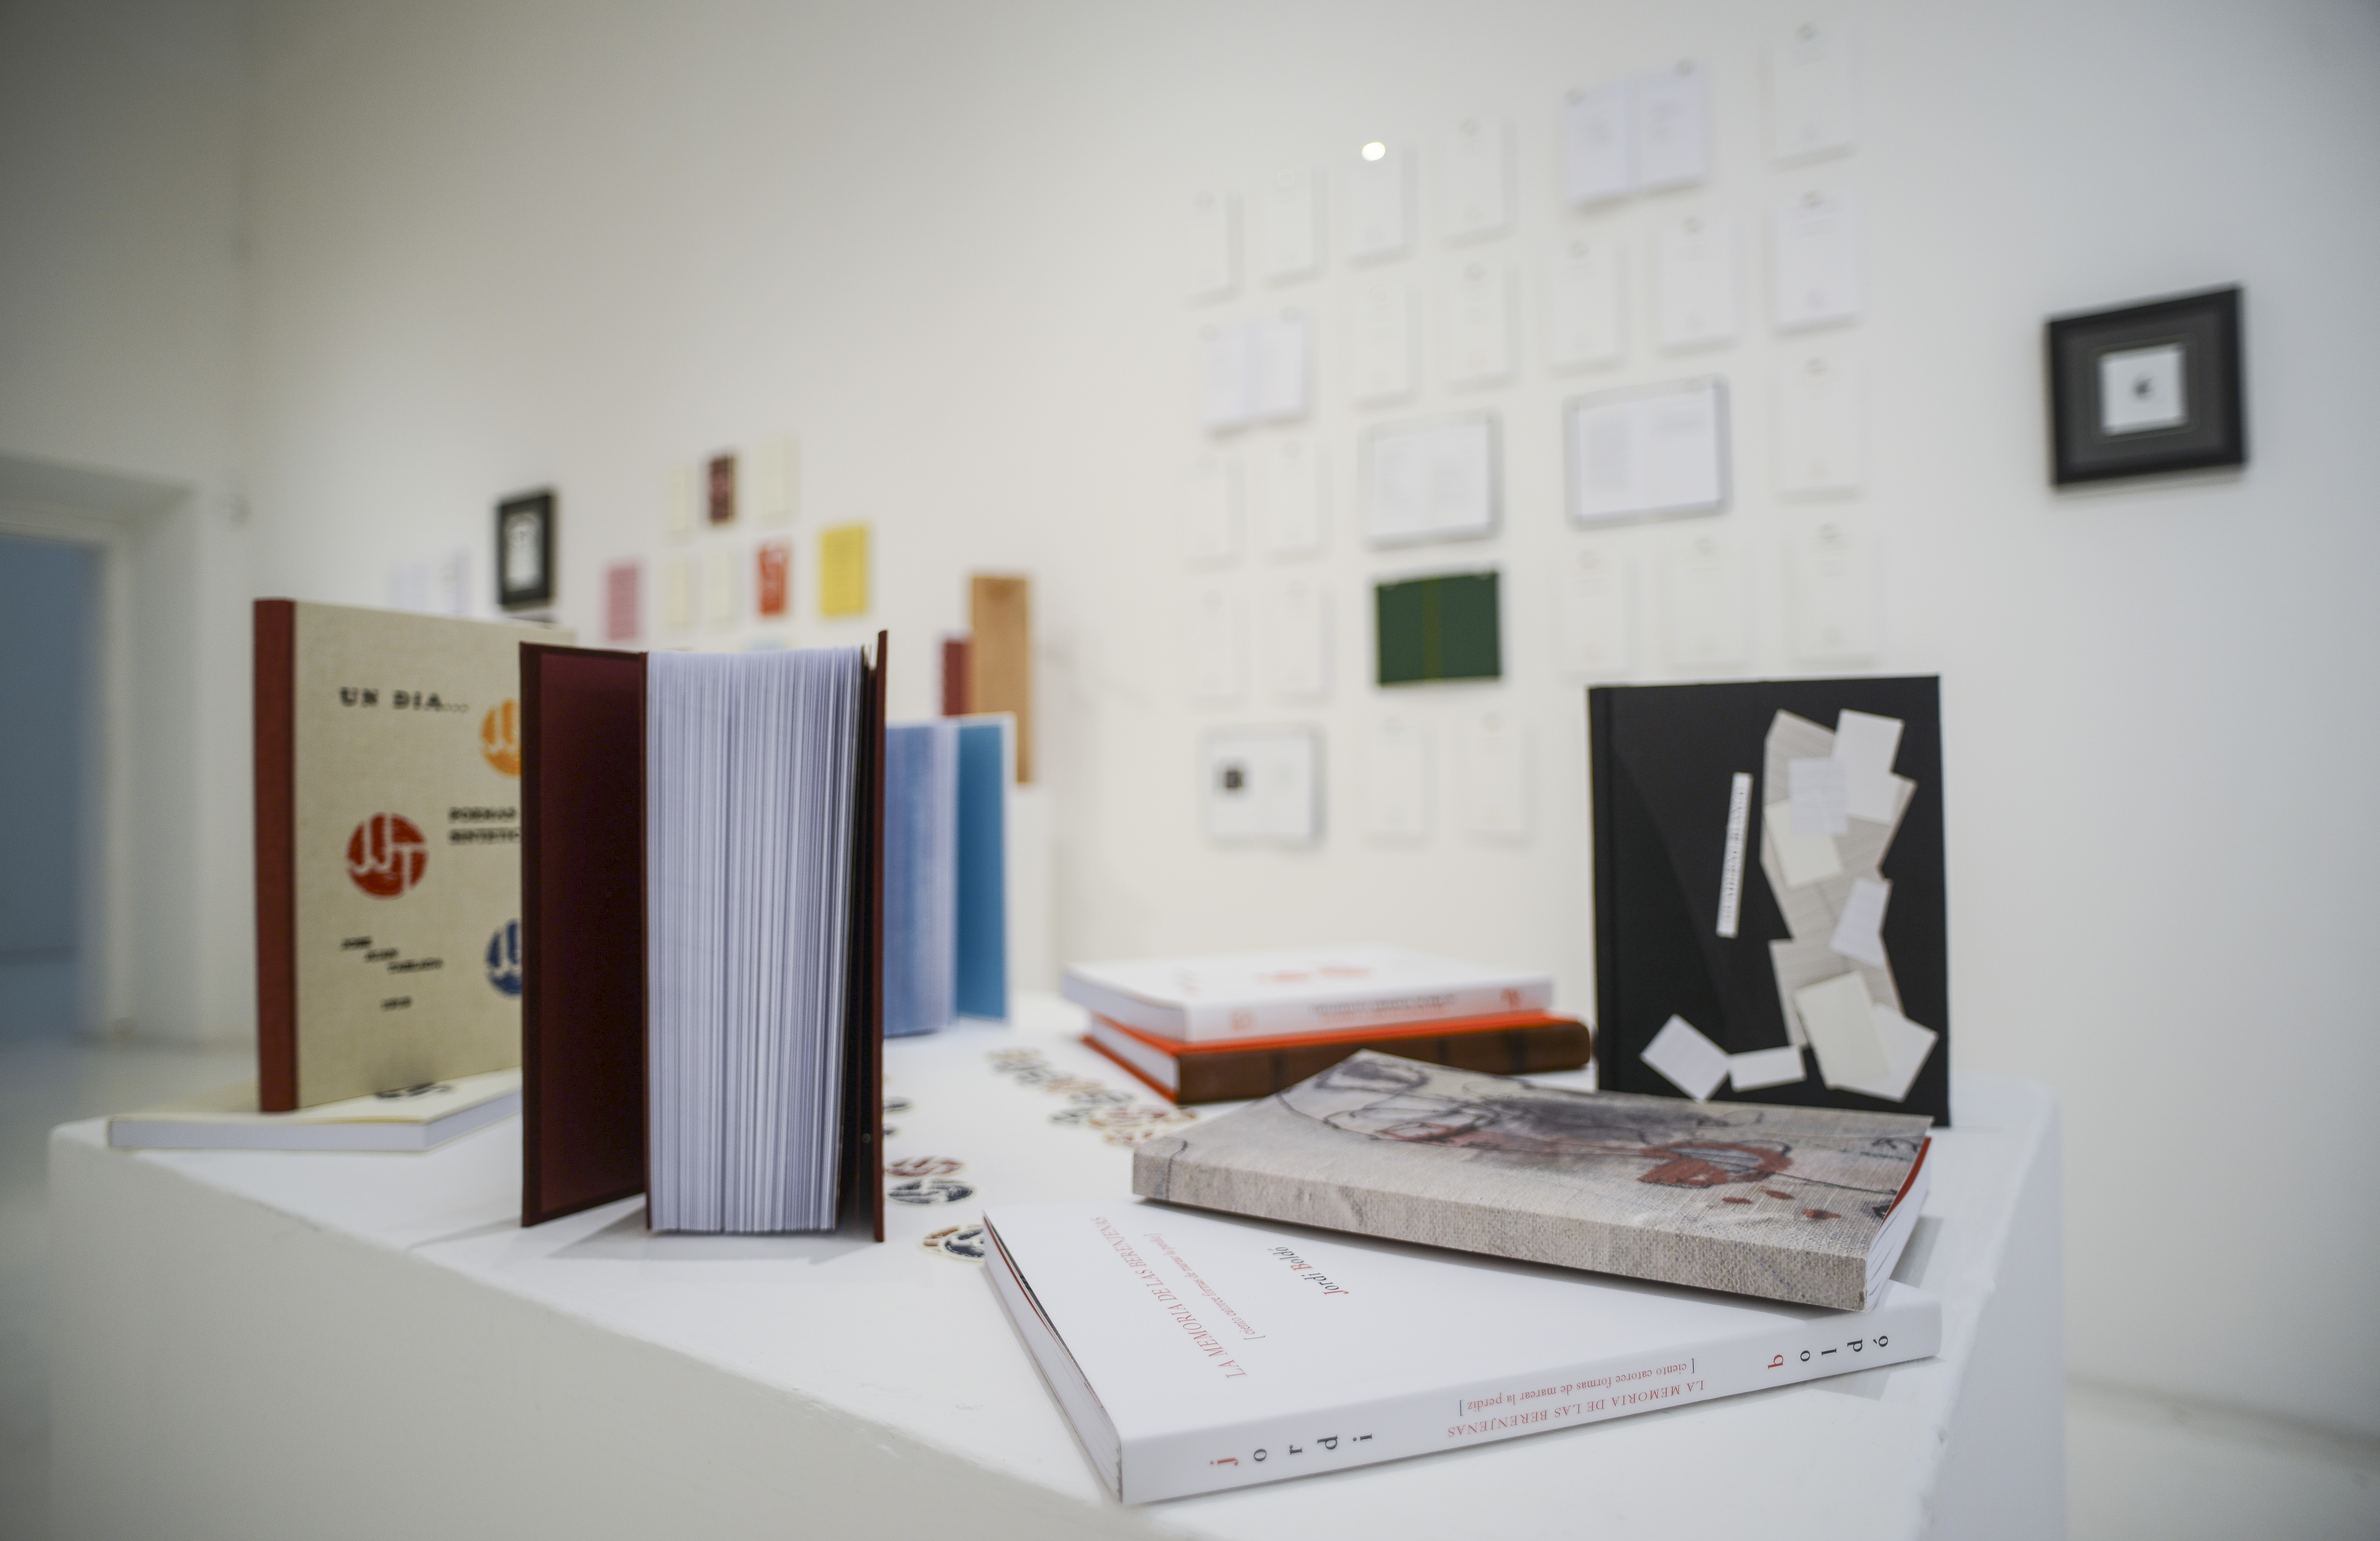 Instalación “La trama de los libros”, Centro de Arte Bernardo Quintana, 2020. 